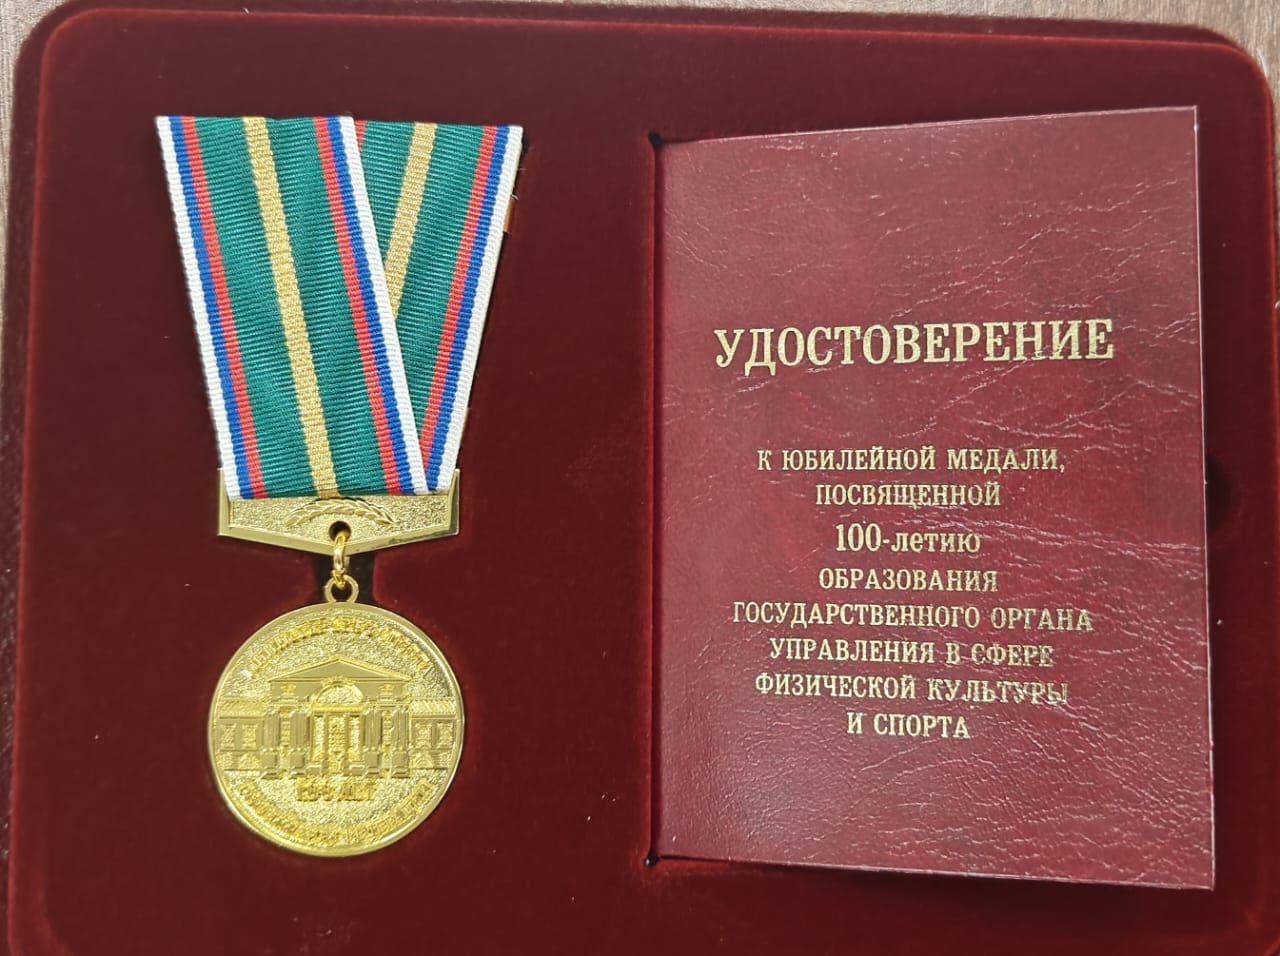 Сотрудники Федерации награждены медалью в честь 100-летия Минспорта